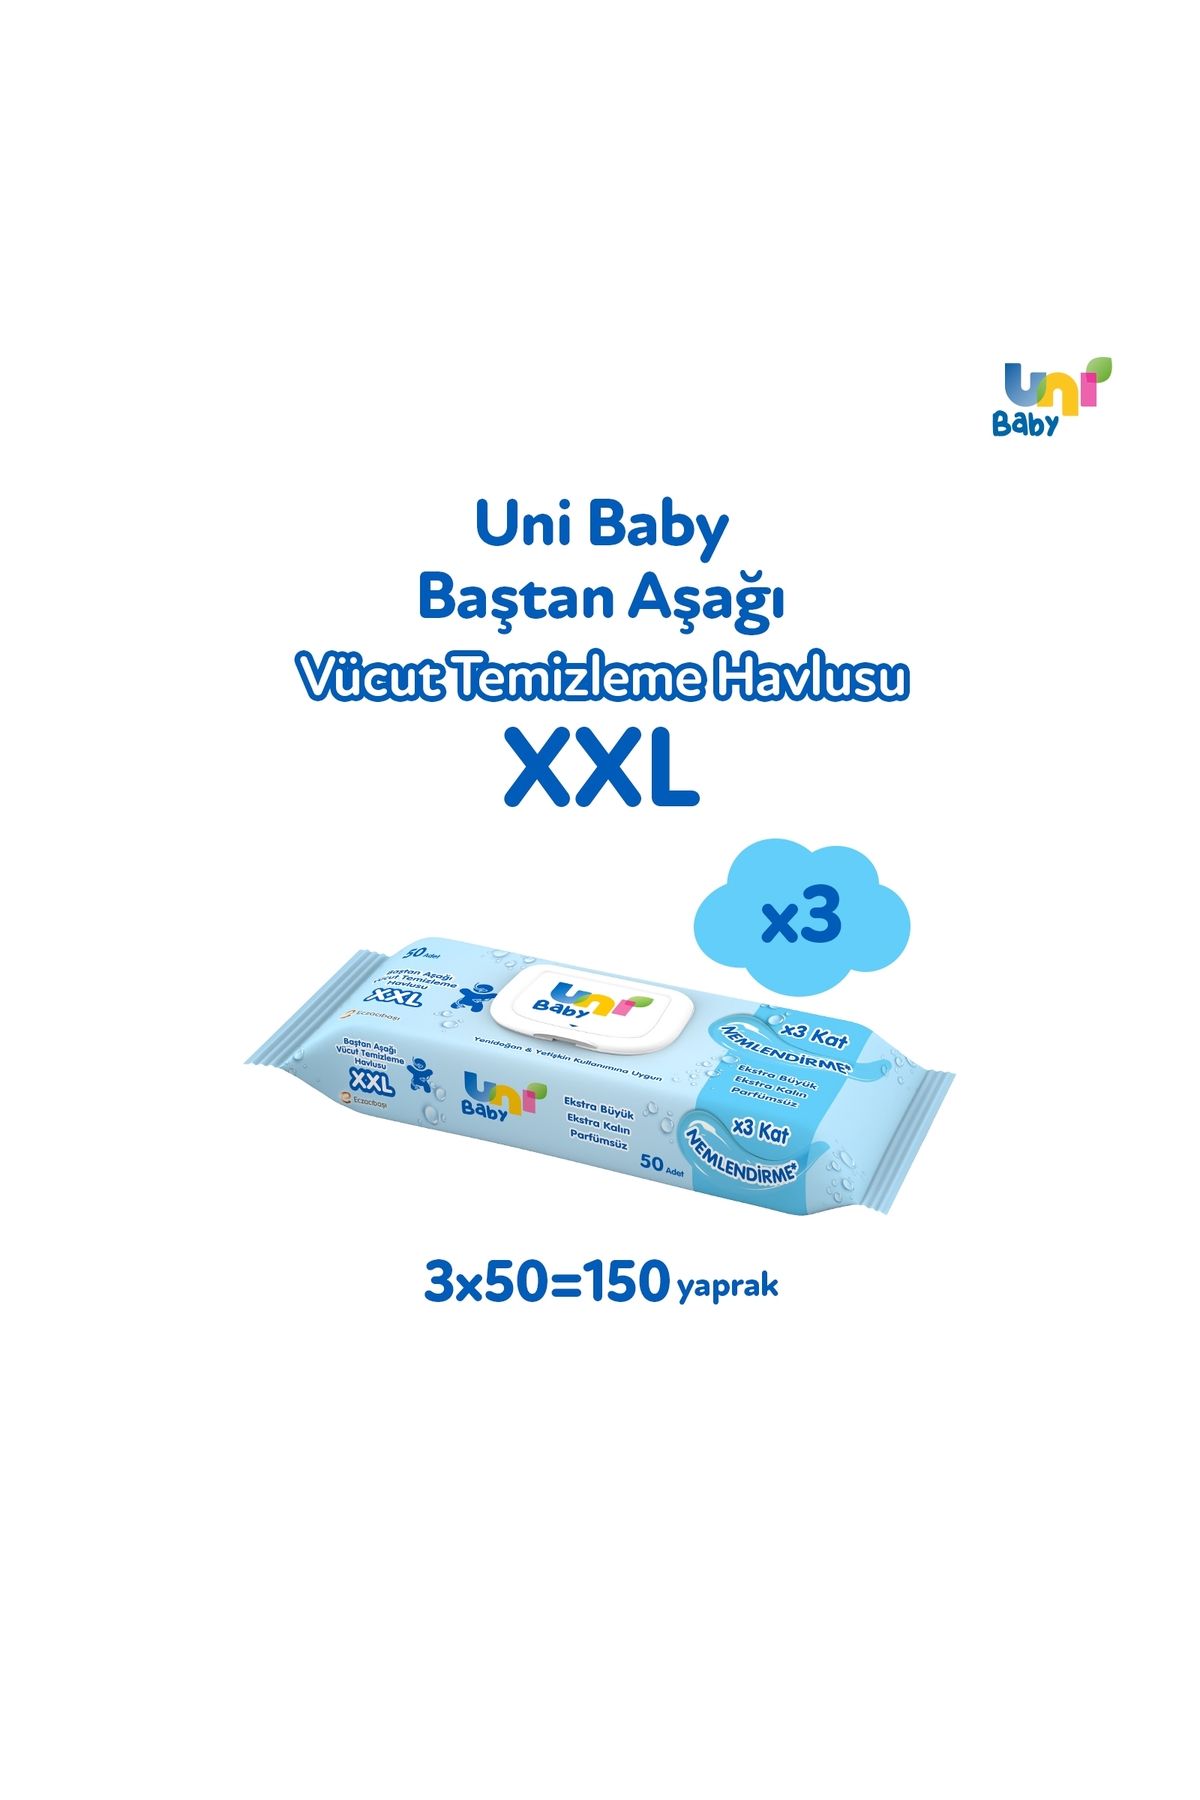 Uni Baby Vücut Temizleme Havlusu Xxl 3'lü 150 Yaprak